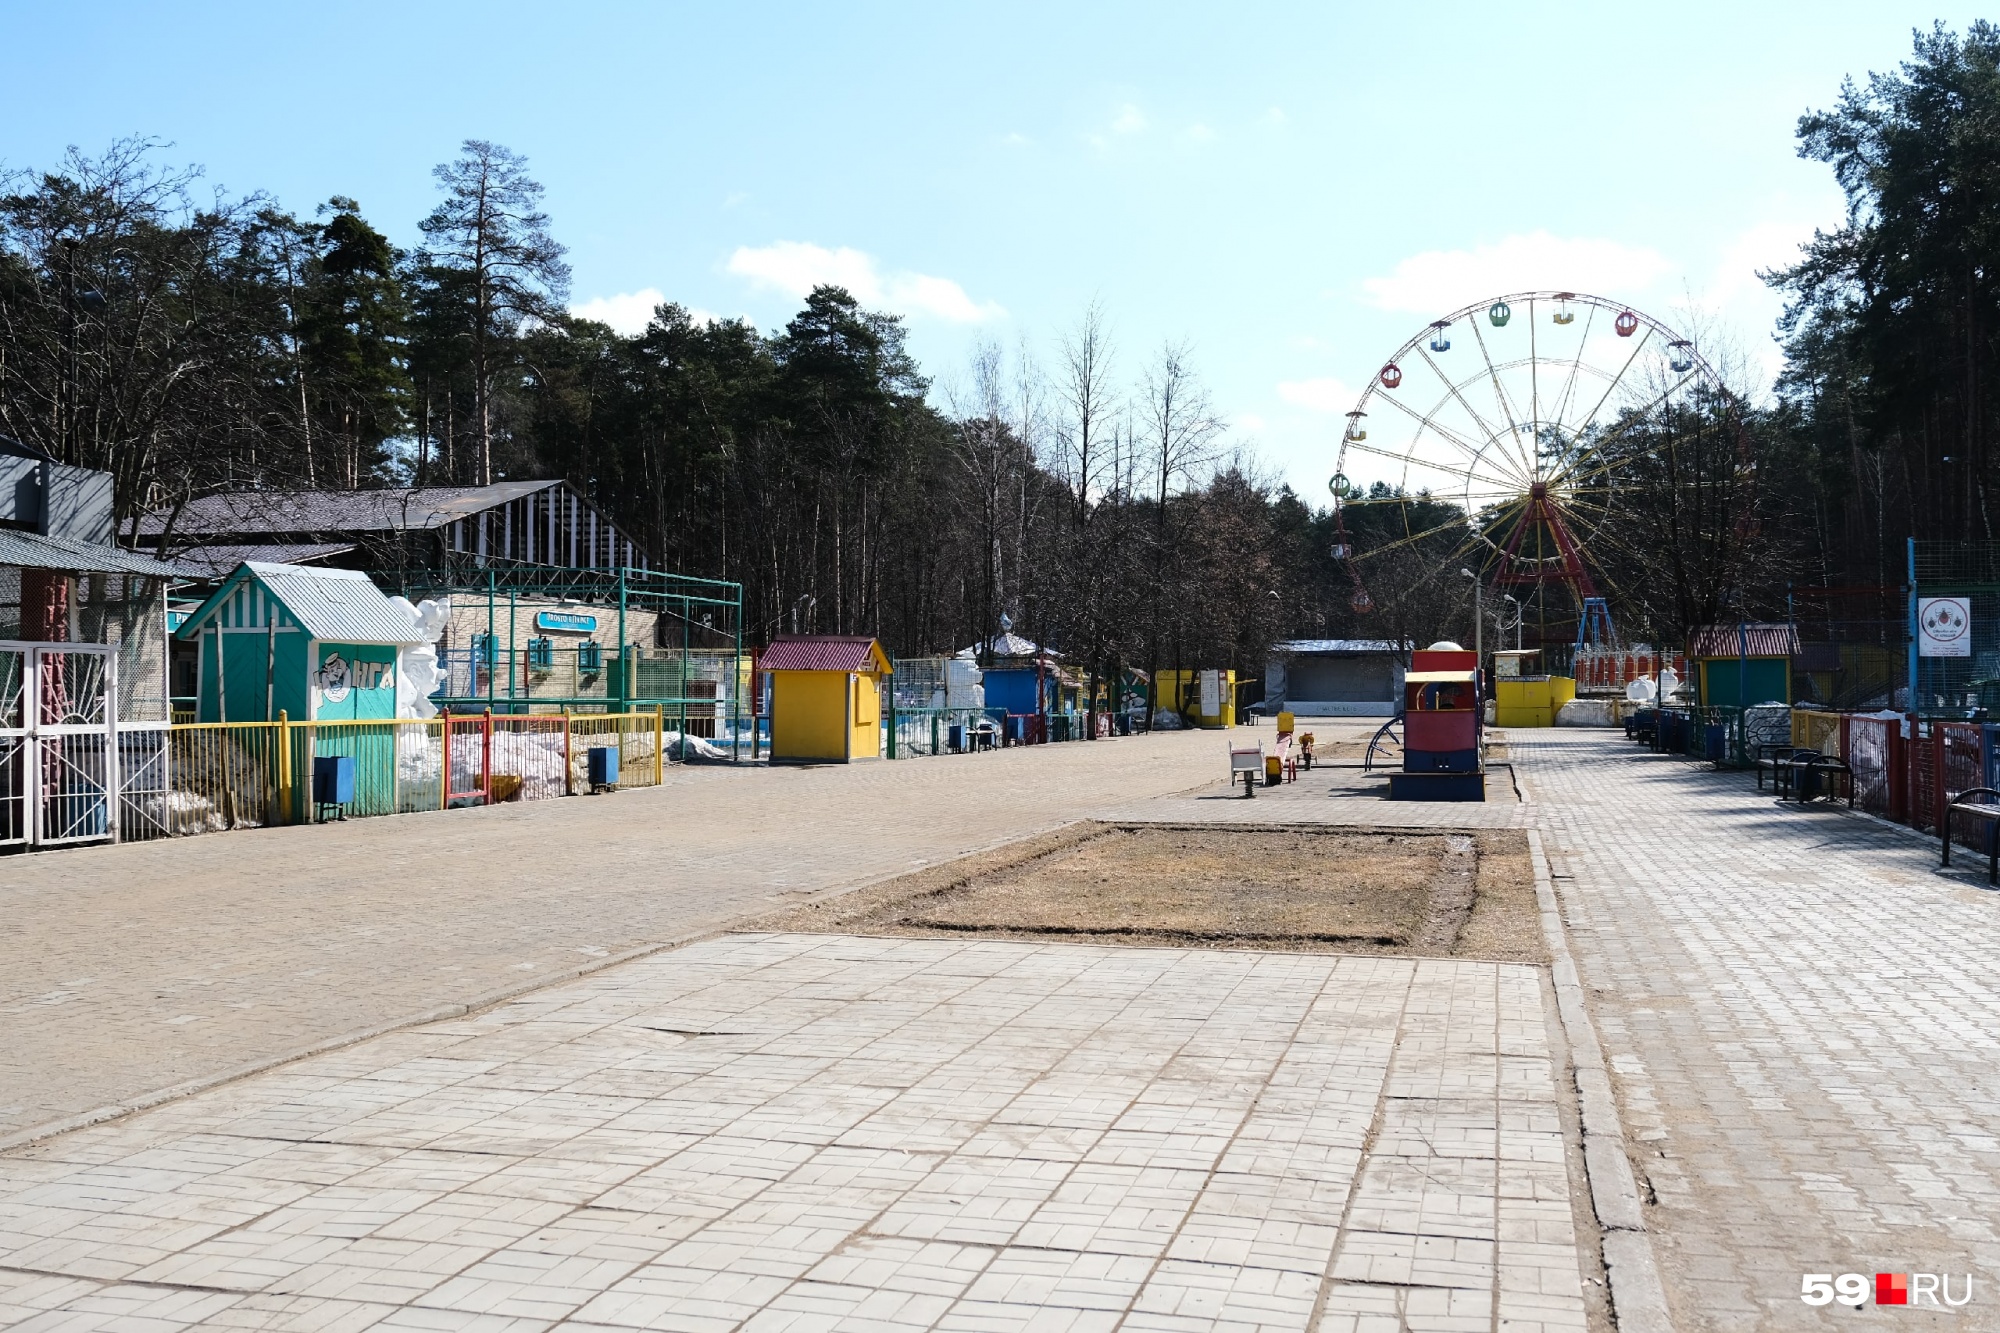 Немного «Зомбиленда»: пустой парк в Закамске и остановившееся колесо